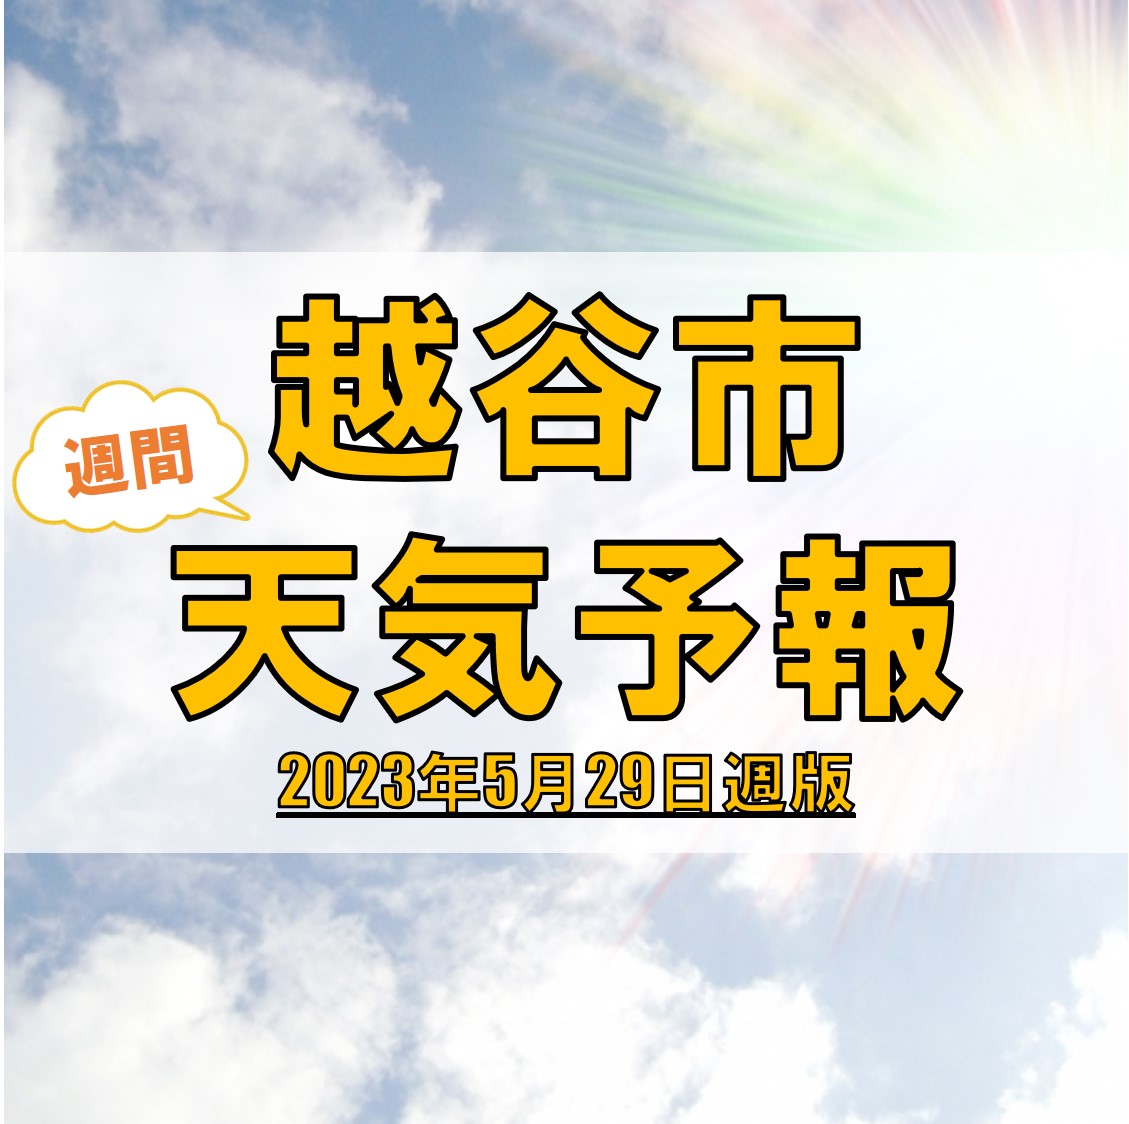 越谷市の天気 週間予報【2023年5月29日週】